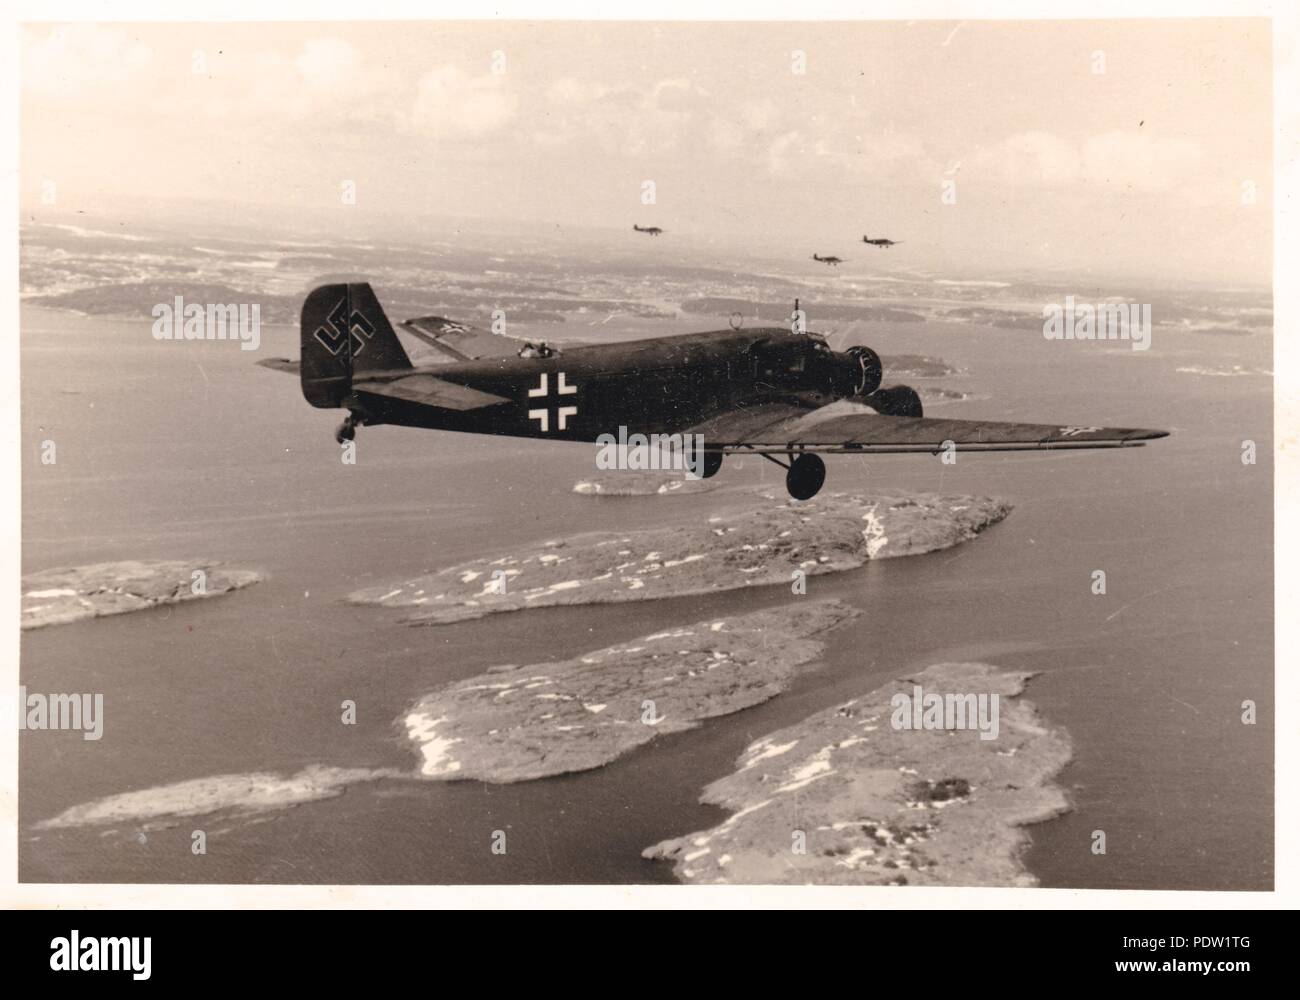 Bild aus dem Fotoalbum von Oberfeldwebel Karl gendner von 1. Staffel, Kampfgeschwader 40: Luft-zu-Foto von einem Flug der Junkers Ju 52/3 ms des KGzbV 1 auf dem Weg von Norwegen nach Aalborg in Dänemark, Mai 1940. Das nächste Flugzeug 1 Z + GK 2./Staffel KGzbV 1. Von Interesse ist die übergroße Hakenkreuz auf das Heck des Flugzeugs. Karl Gendner war ein Pilot mit 3./KGzbV 1 zu dieser Zeit. Stockfoto